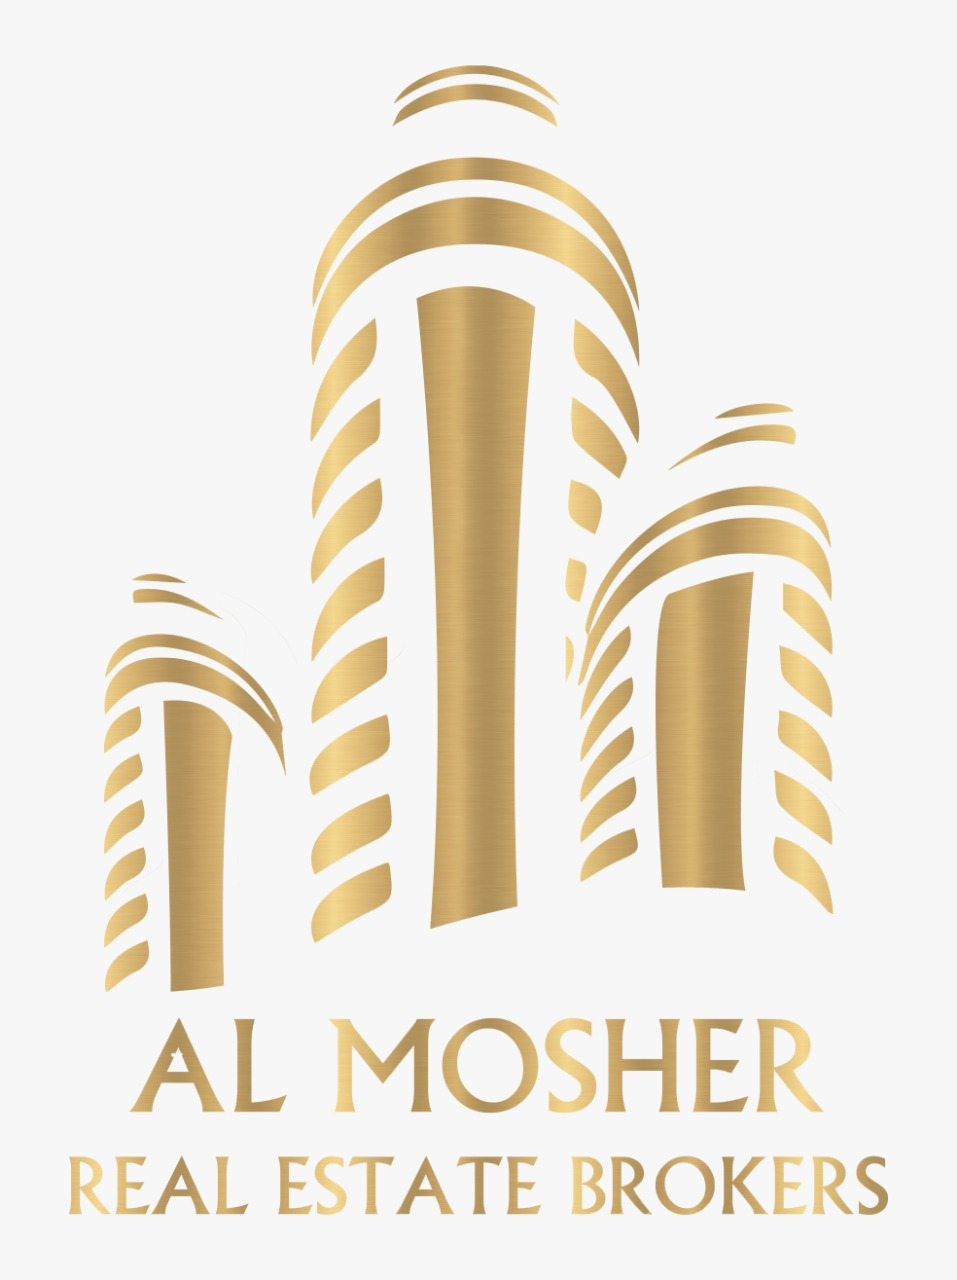 Al Mosher Real Estate Brokers